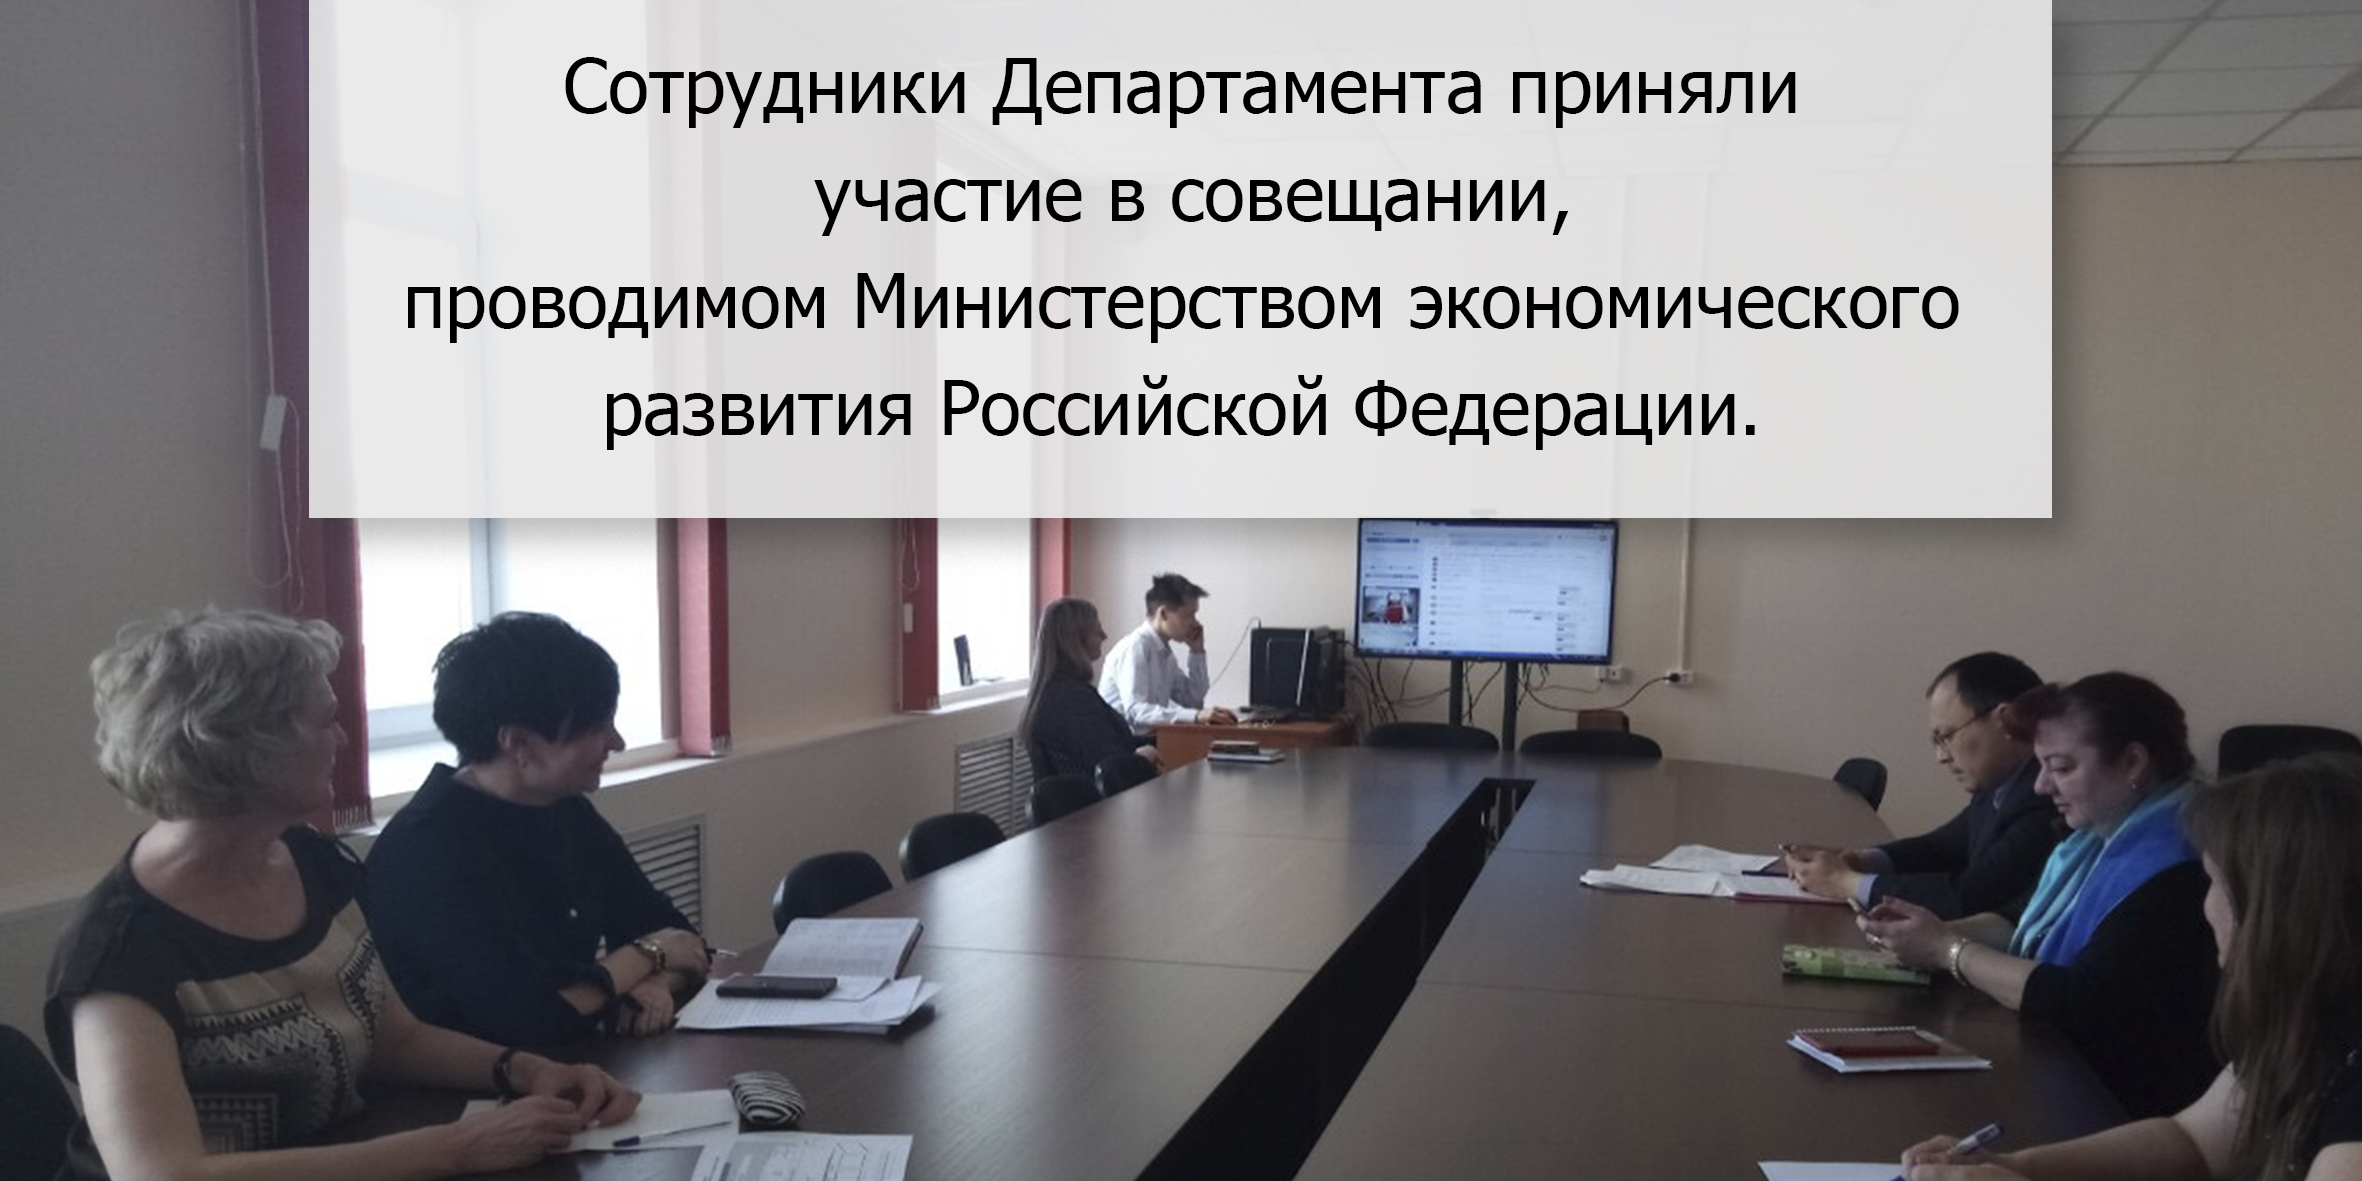 Сотрудники Департамента приняли участие в совещании, проводимом Министерством экономического развития Российской Федерации.